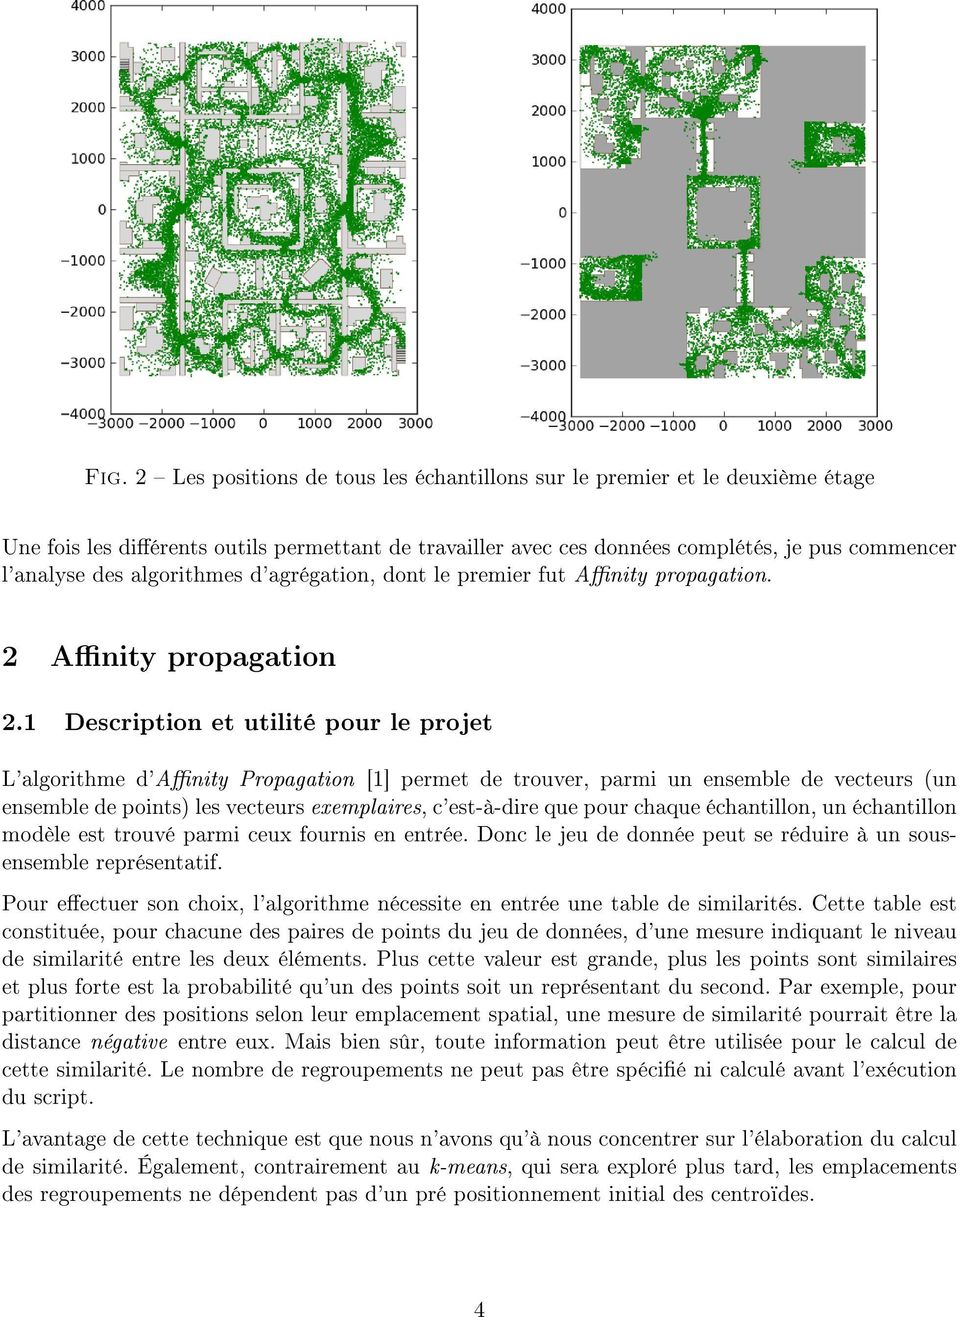 1 Description et utilité pour le projet L'algorithme d'anity Propagation [1] permet de trouver, parmi un ensemble de vecteurs (un ensemble de points) les vecteurs exemplaires, c'est-à-dire que pour